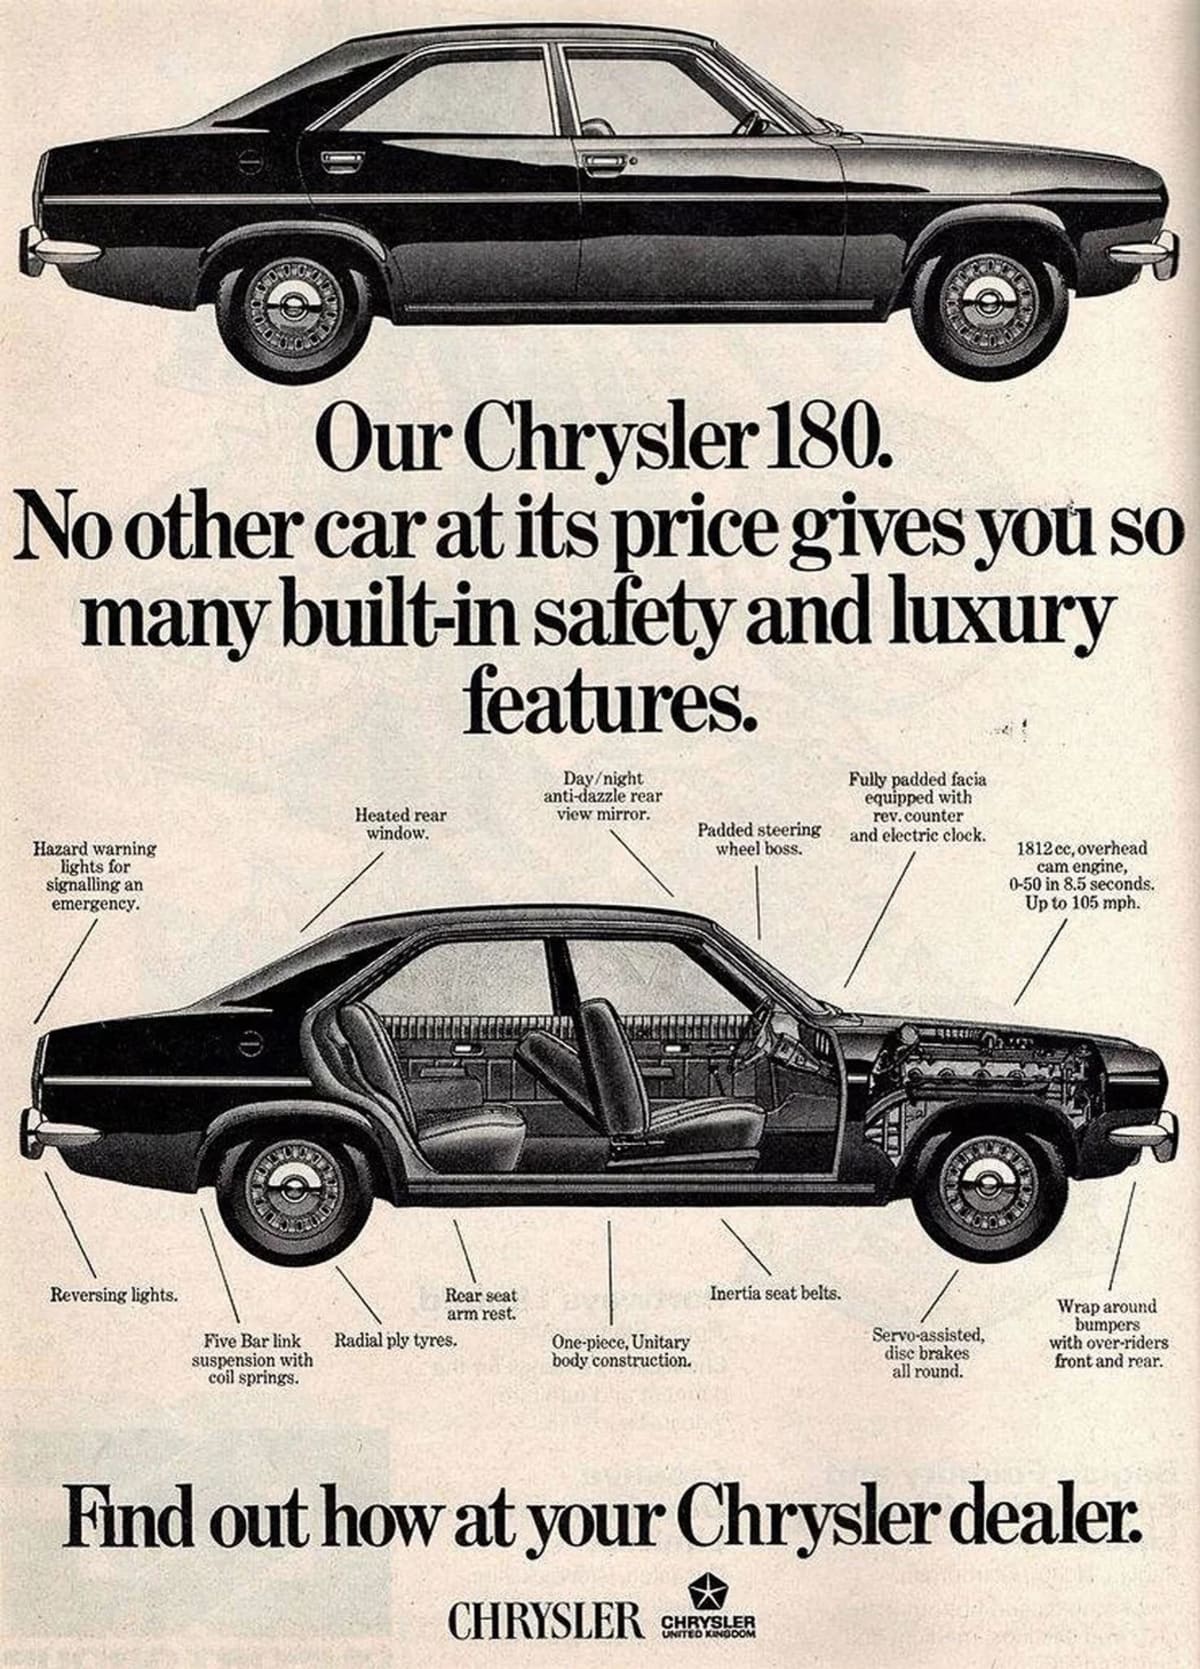 Chrysler 160/180